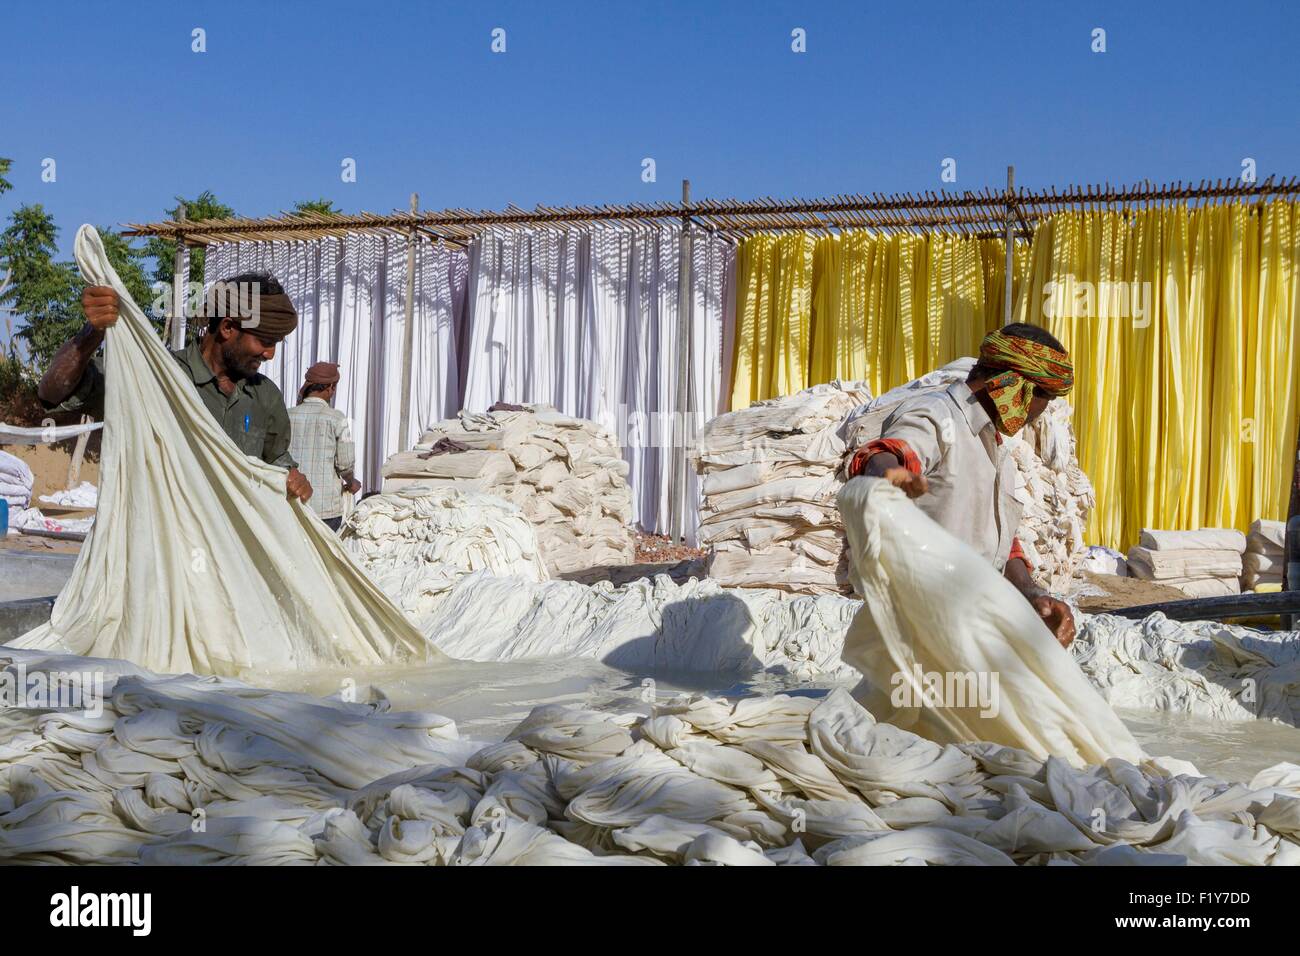 Indien, Rajasthan State Sanganer, Textilfabrik, Textilien, waschen und trocknen auf Bambus-Strukturen Stockfoto